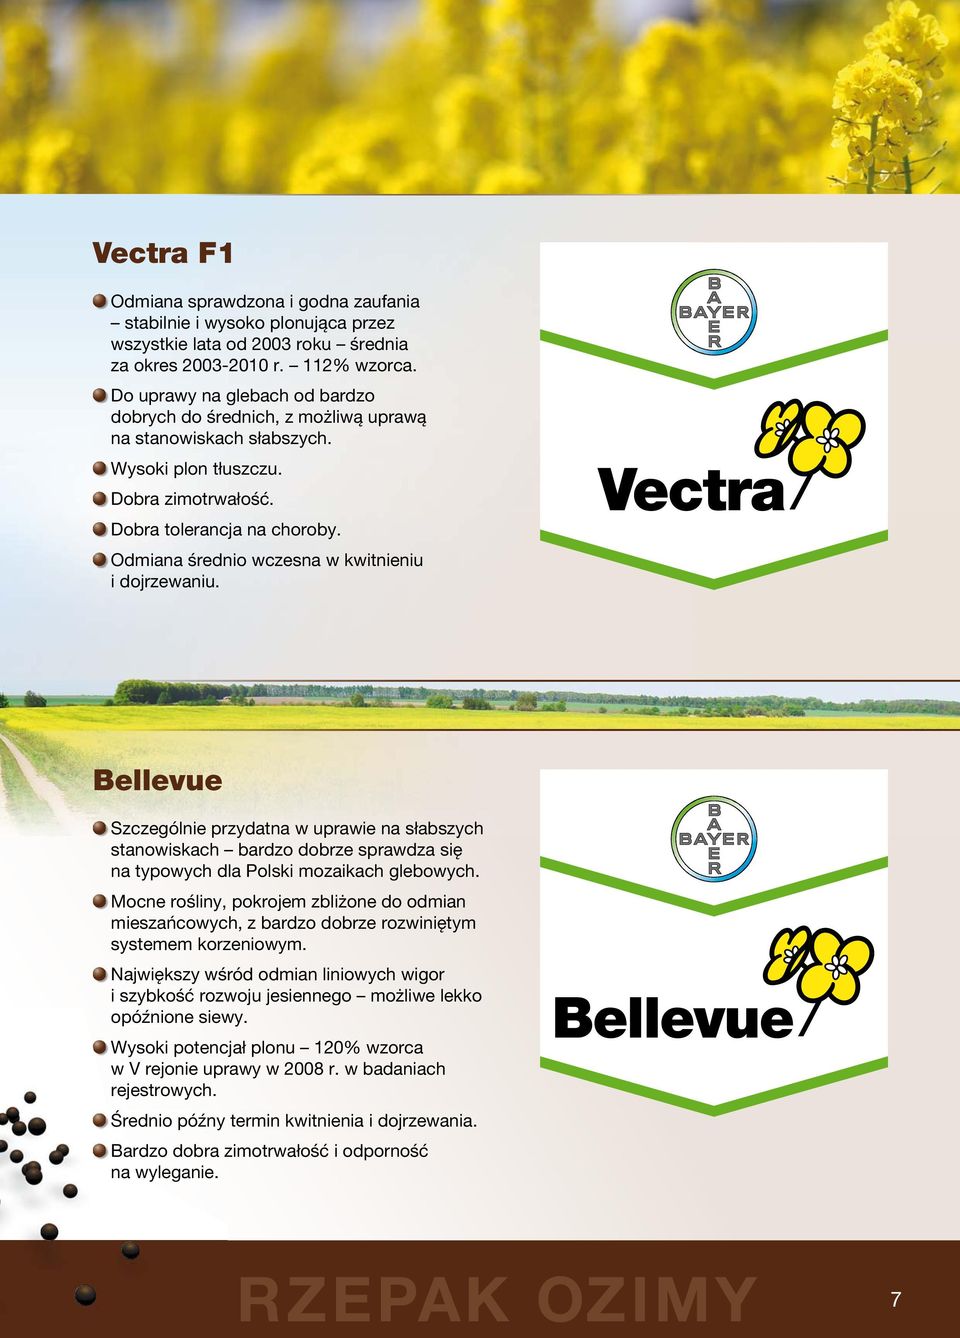 Odmiana średnio wczesna w kwitnieniu i dojrzewaniu. Vectra Bellevue Szczególnie przydatna w uprawie na słabszych stanowiskach bardzo dobrze sprawdza się na typowych dla Polski mozaikach glebowych.